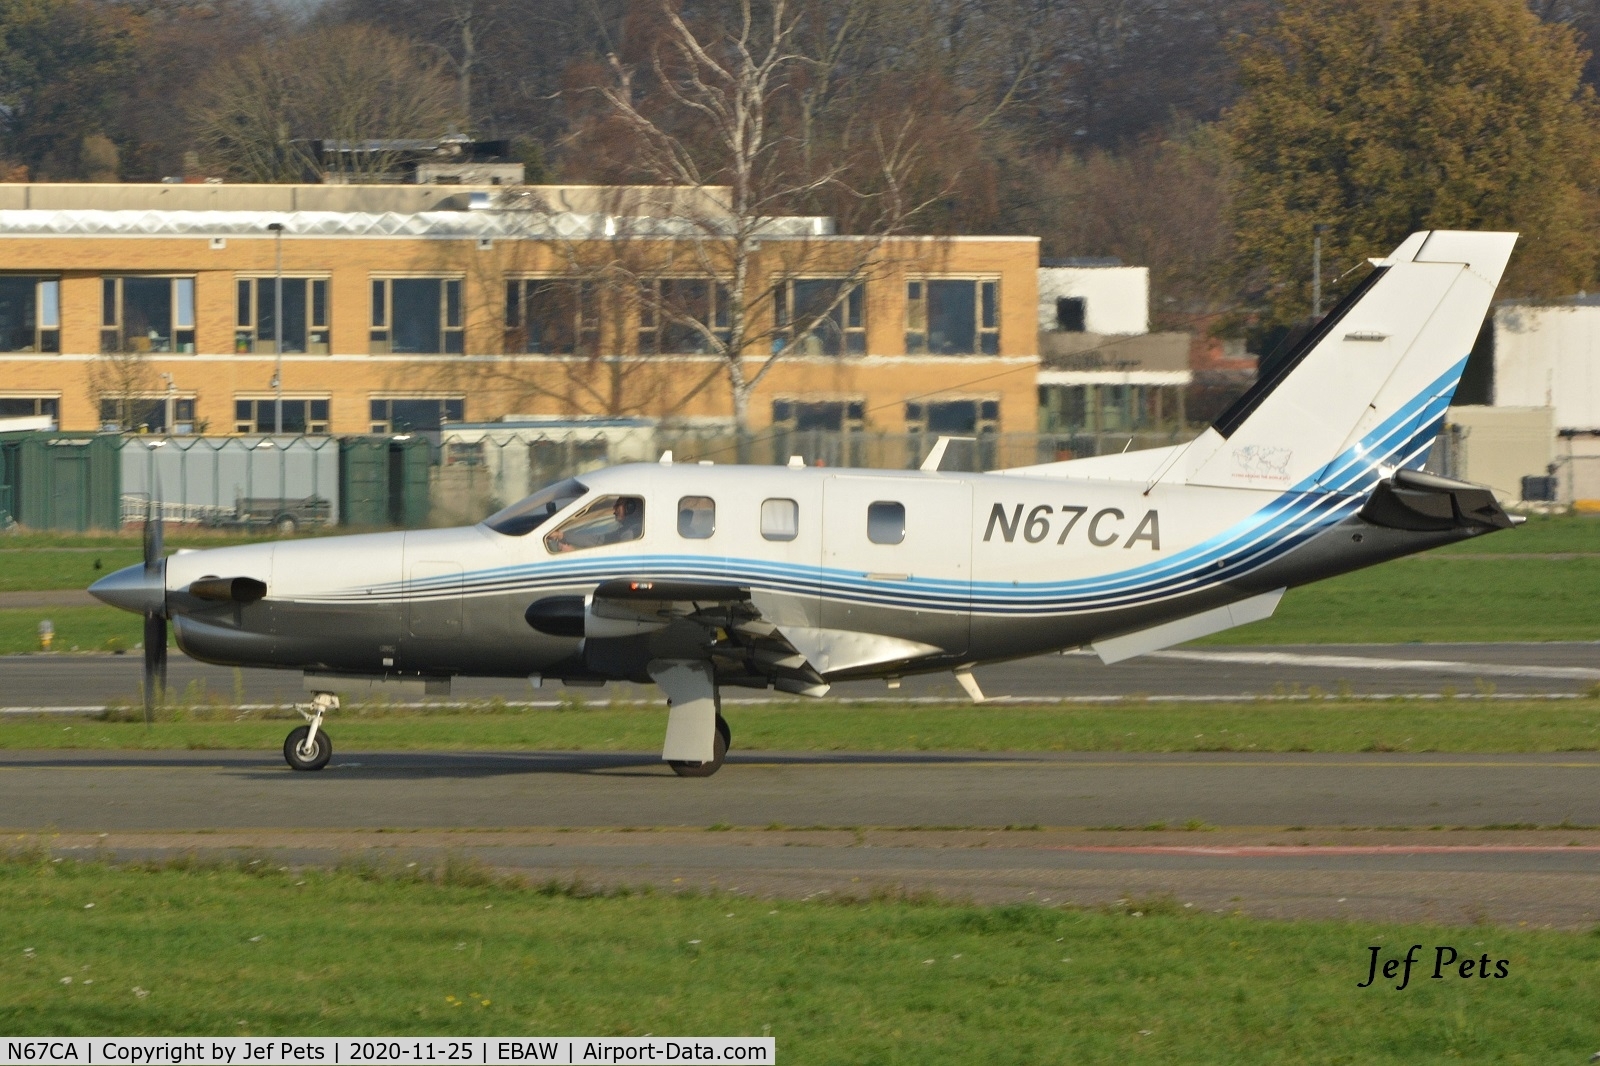 N67CA, 2008 Socata TBM-700N C/N 456, At Antwerp Airport.